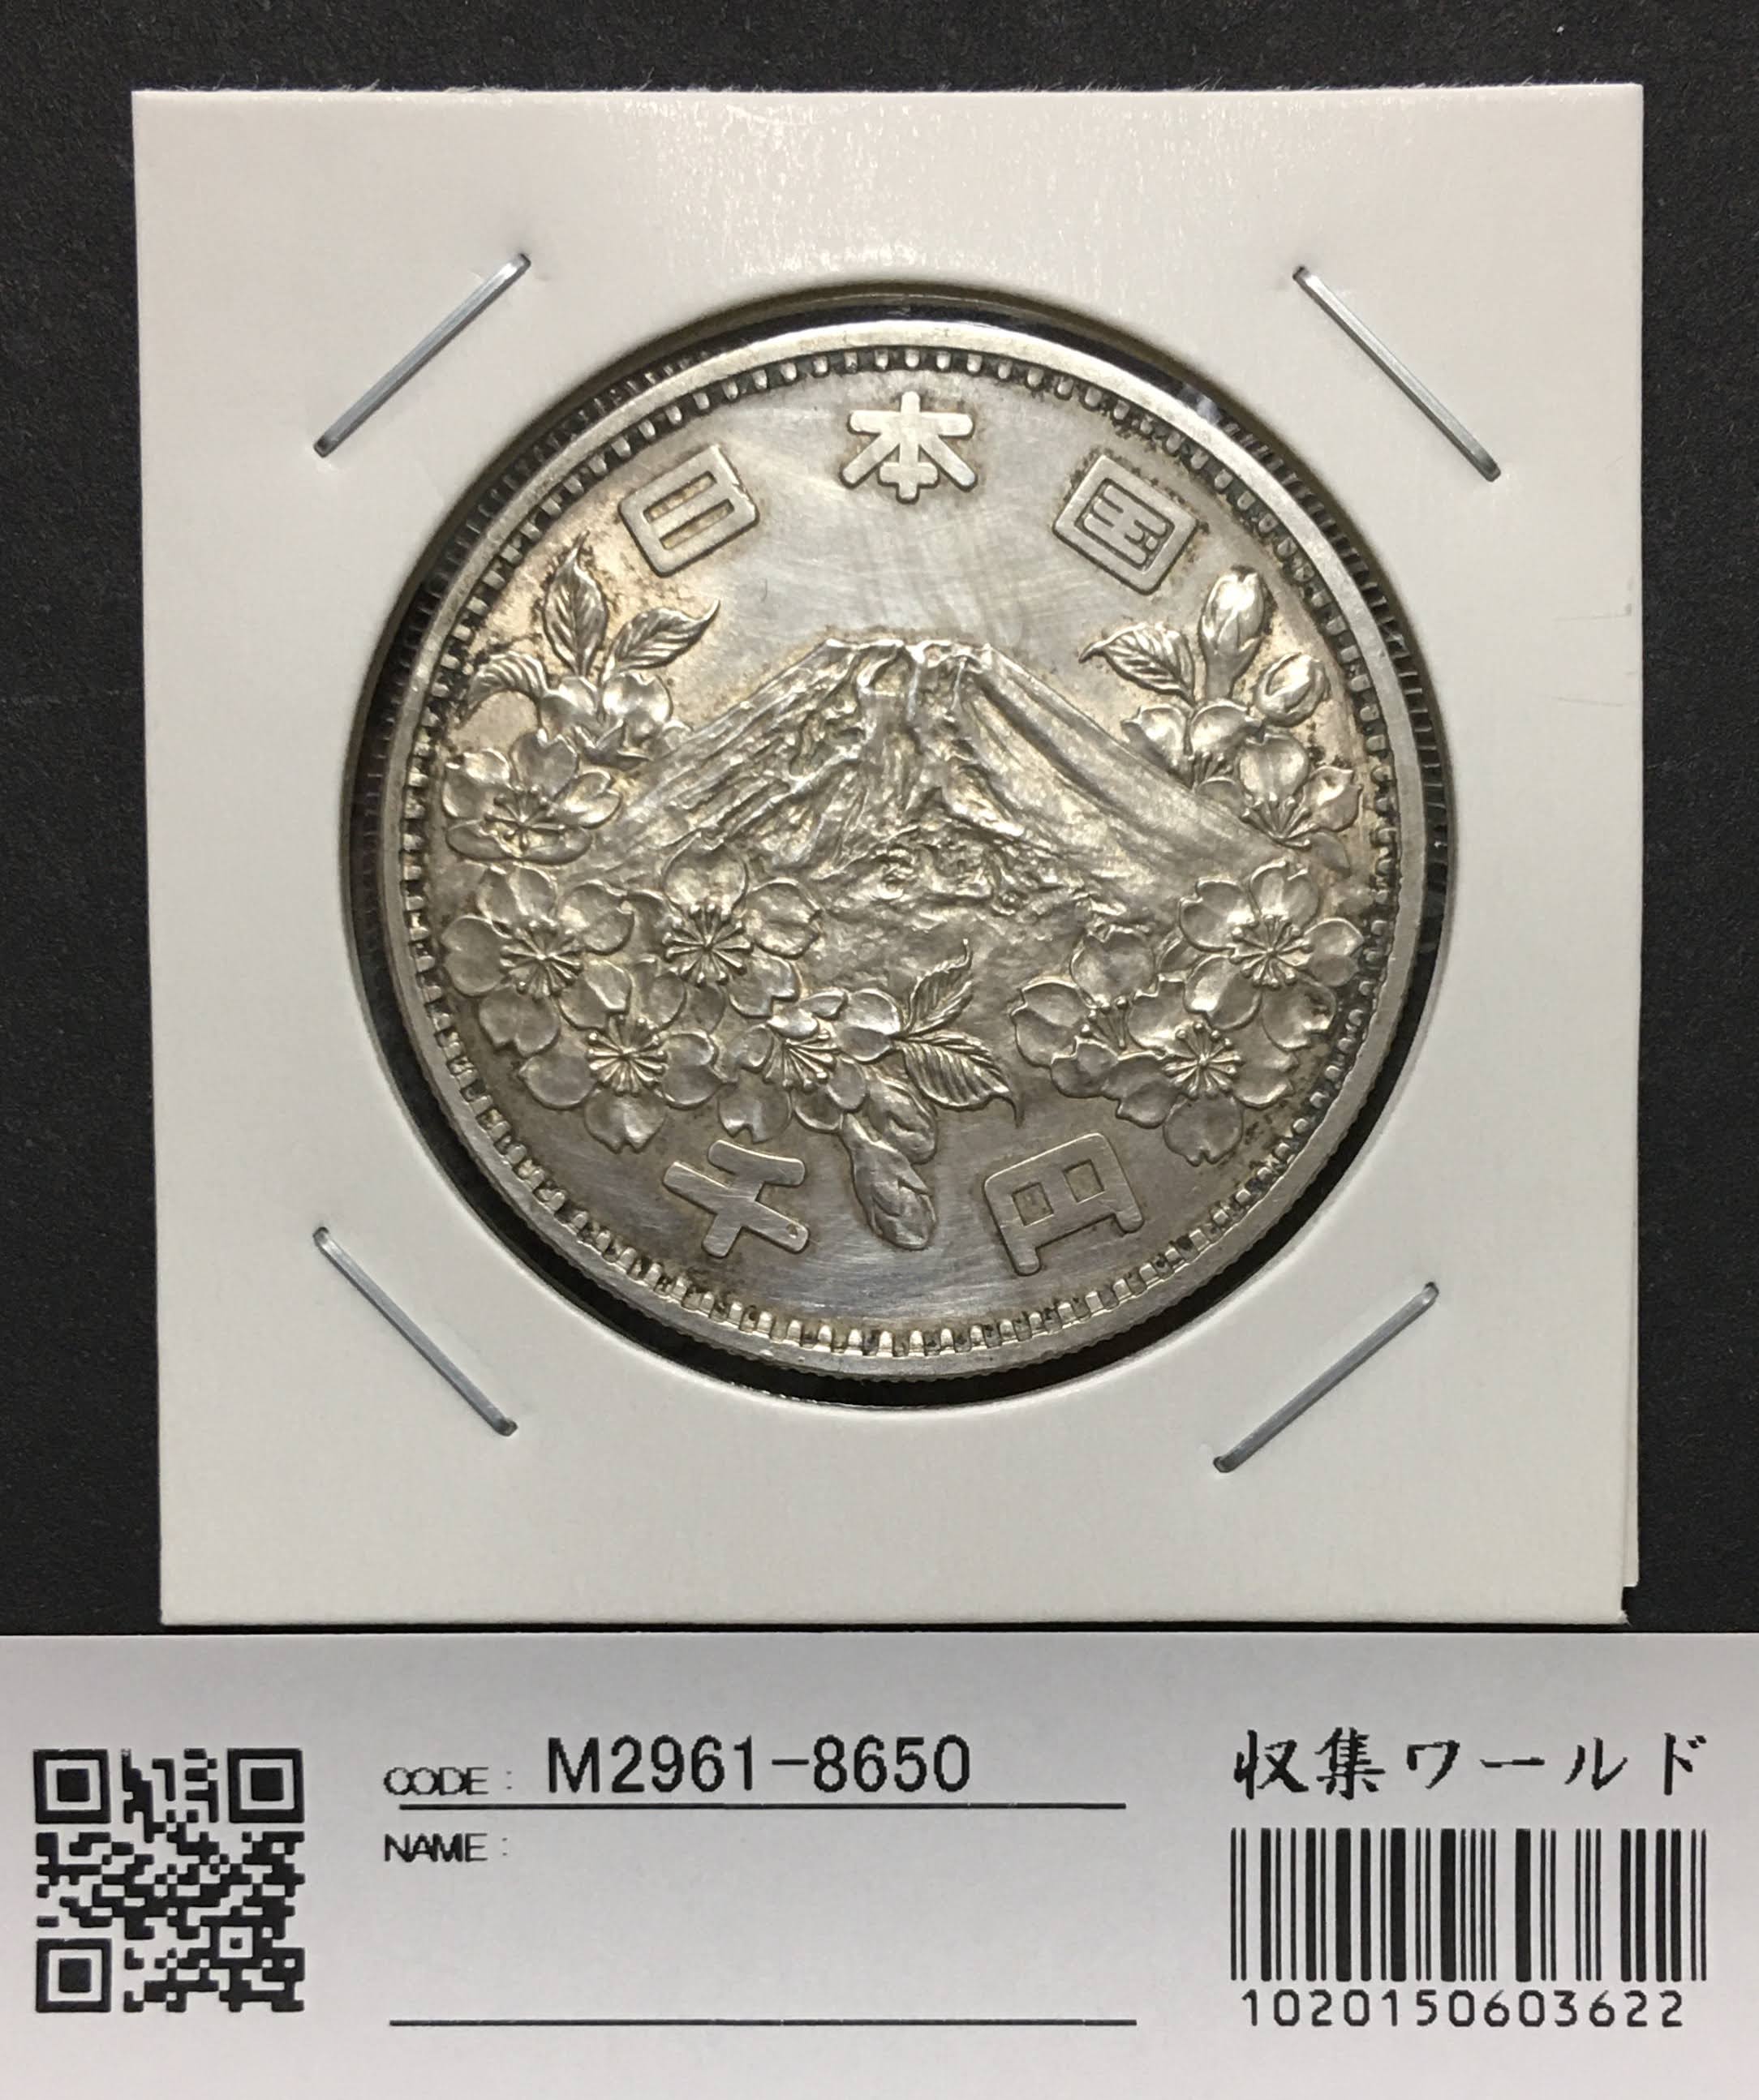 東京オリンピック記念 1000円銀貨 1964年 NGC MS65 トーン - 旧貨幣 